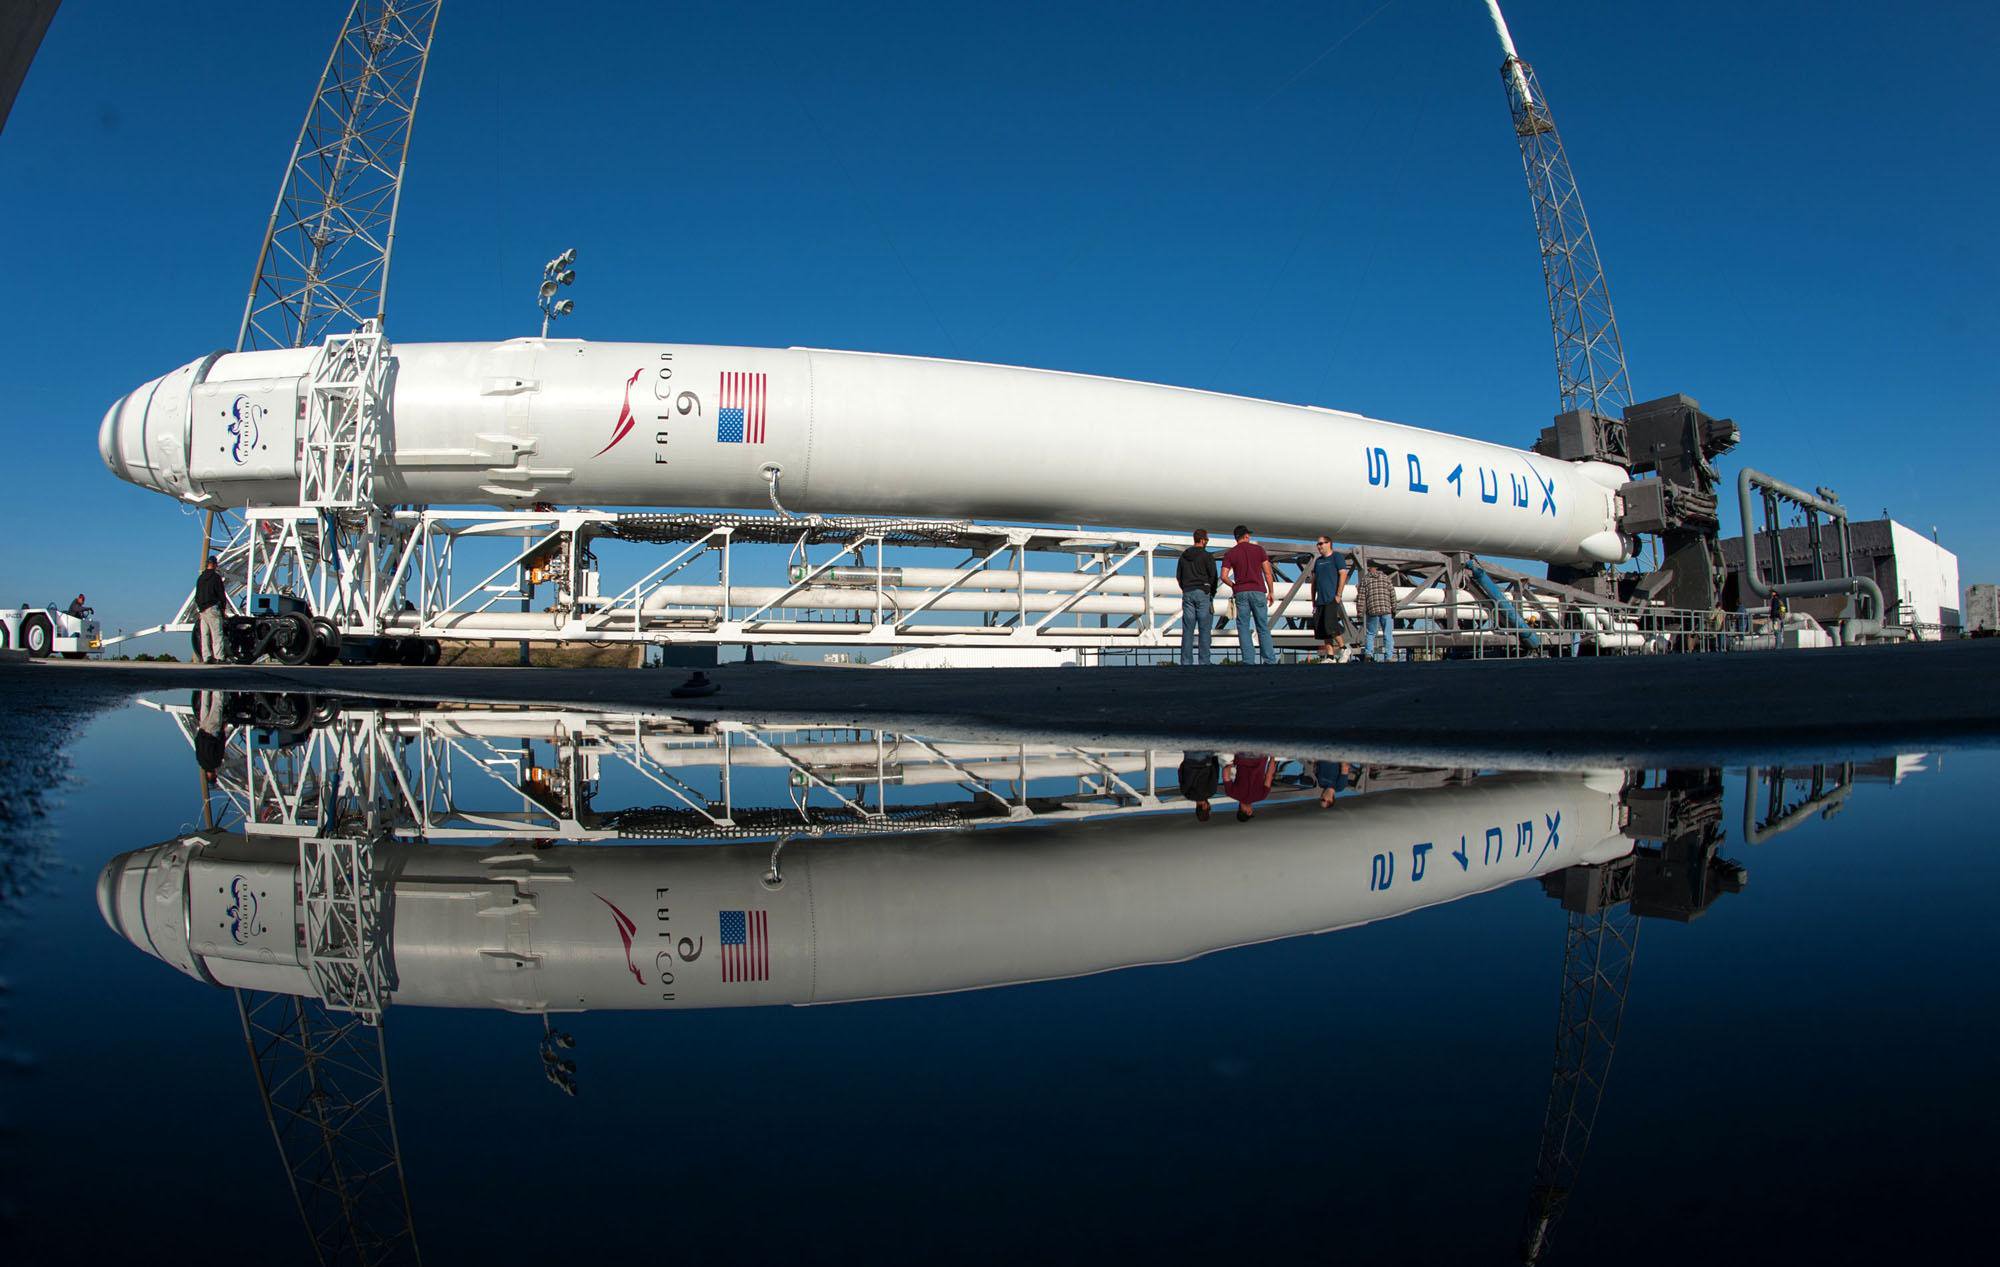 Le kazakhstan a refusé les services de la Nasa et SpaceX a choisi. Pourquoi?